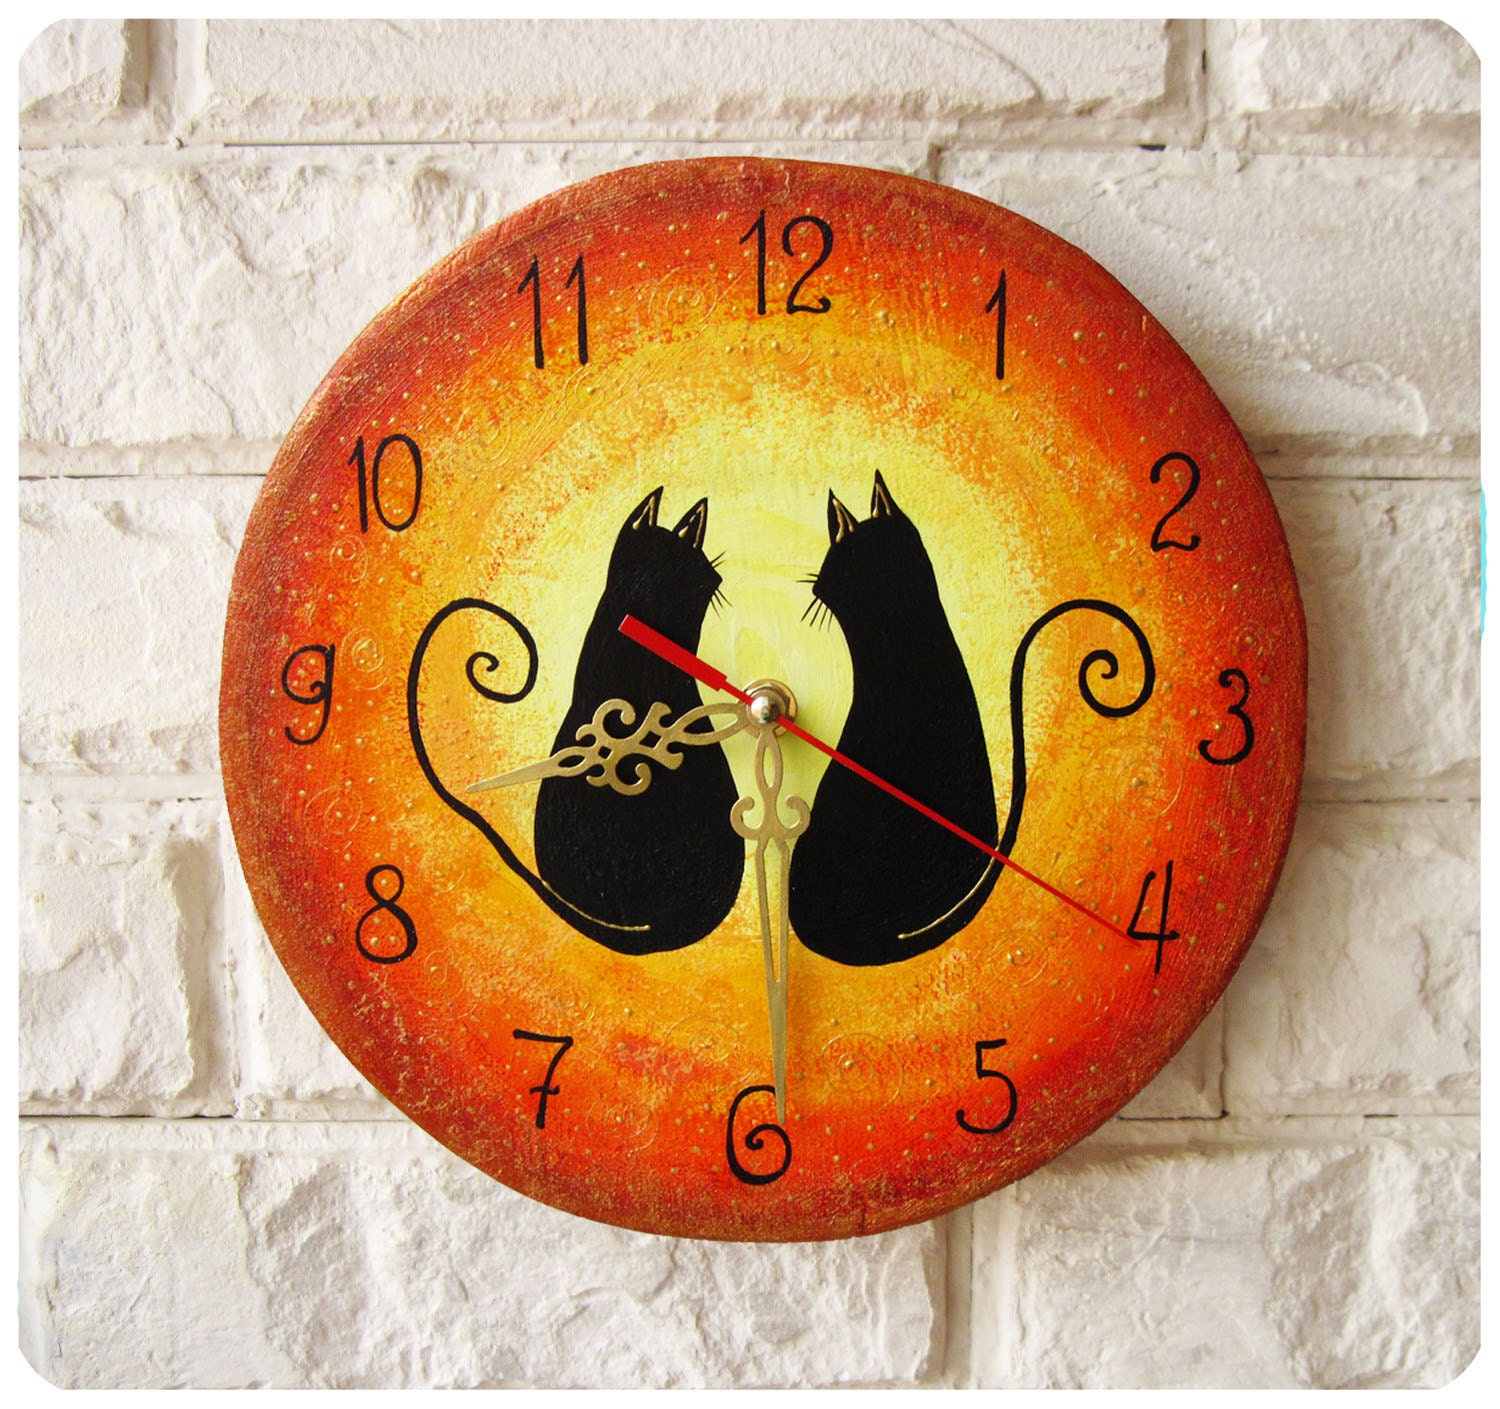 Часы с котом настенные